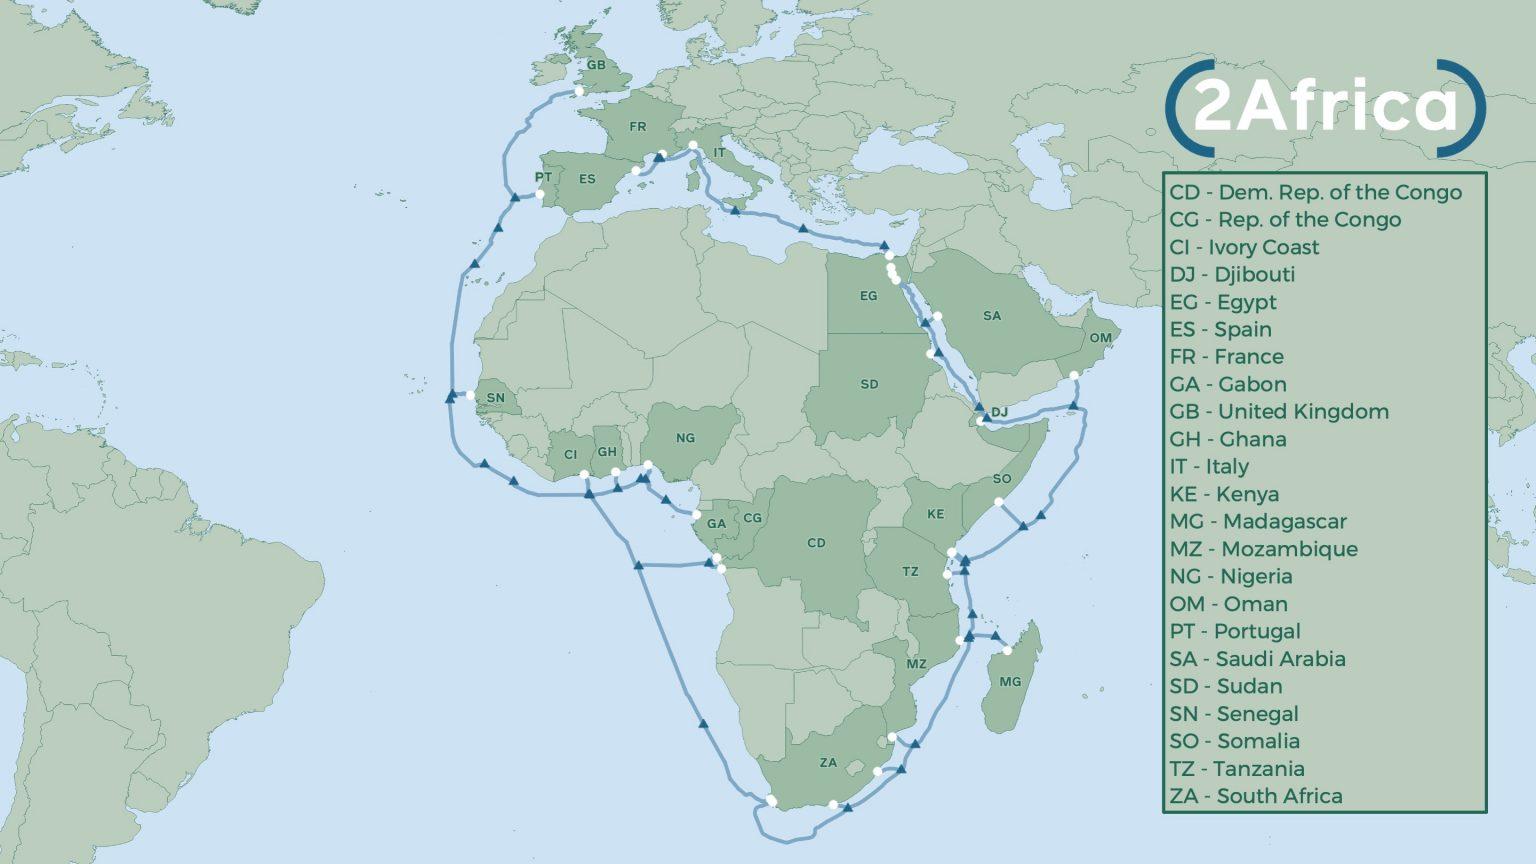 medium-colours-map-2Africa